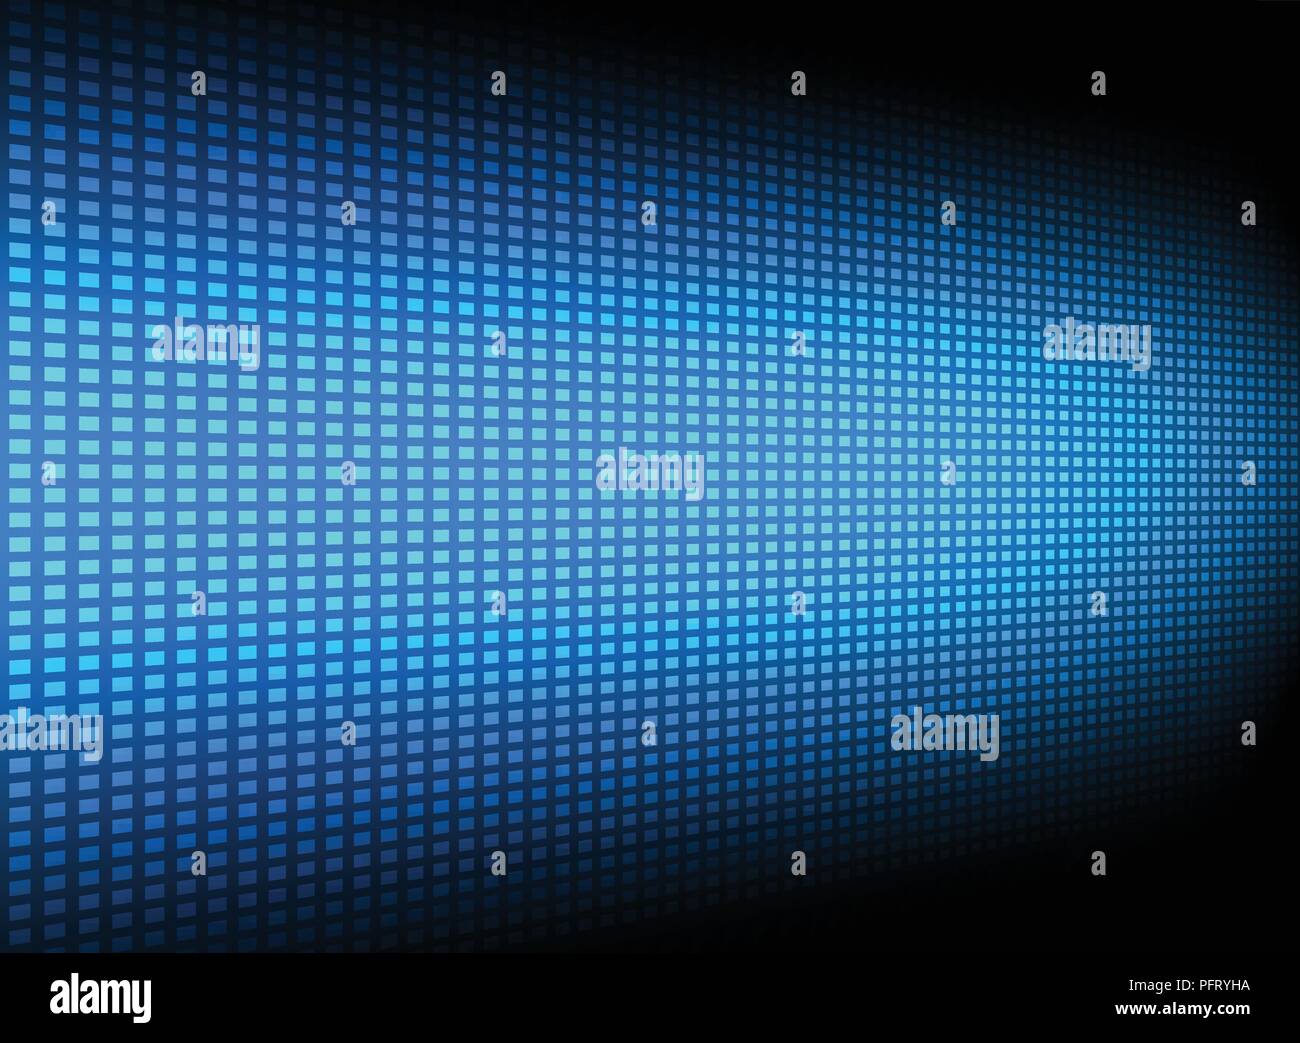 Résumé motif carré bleu futuriste technologie innovation transfert de données perspective sur fond sombre. Vector illustration Illustration de Vecteur